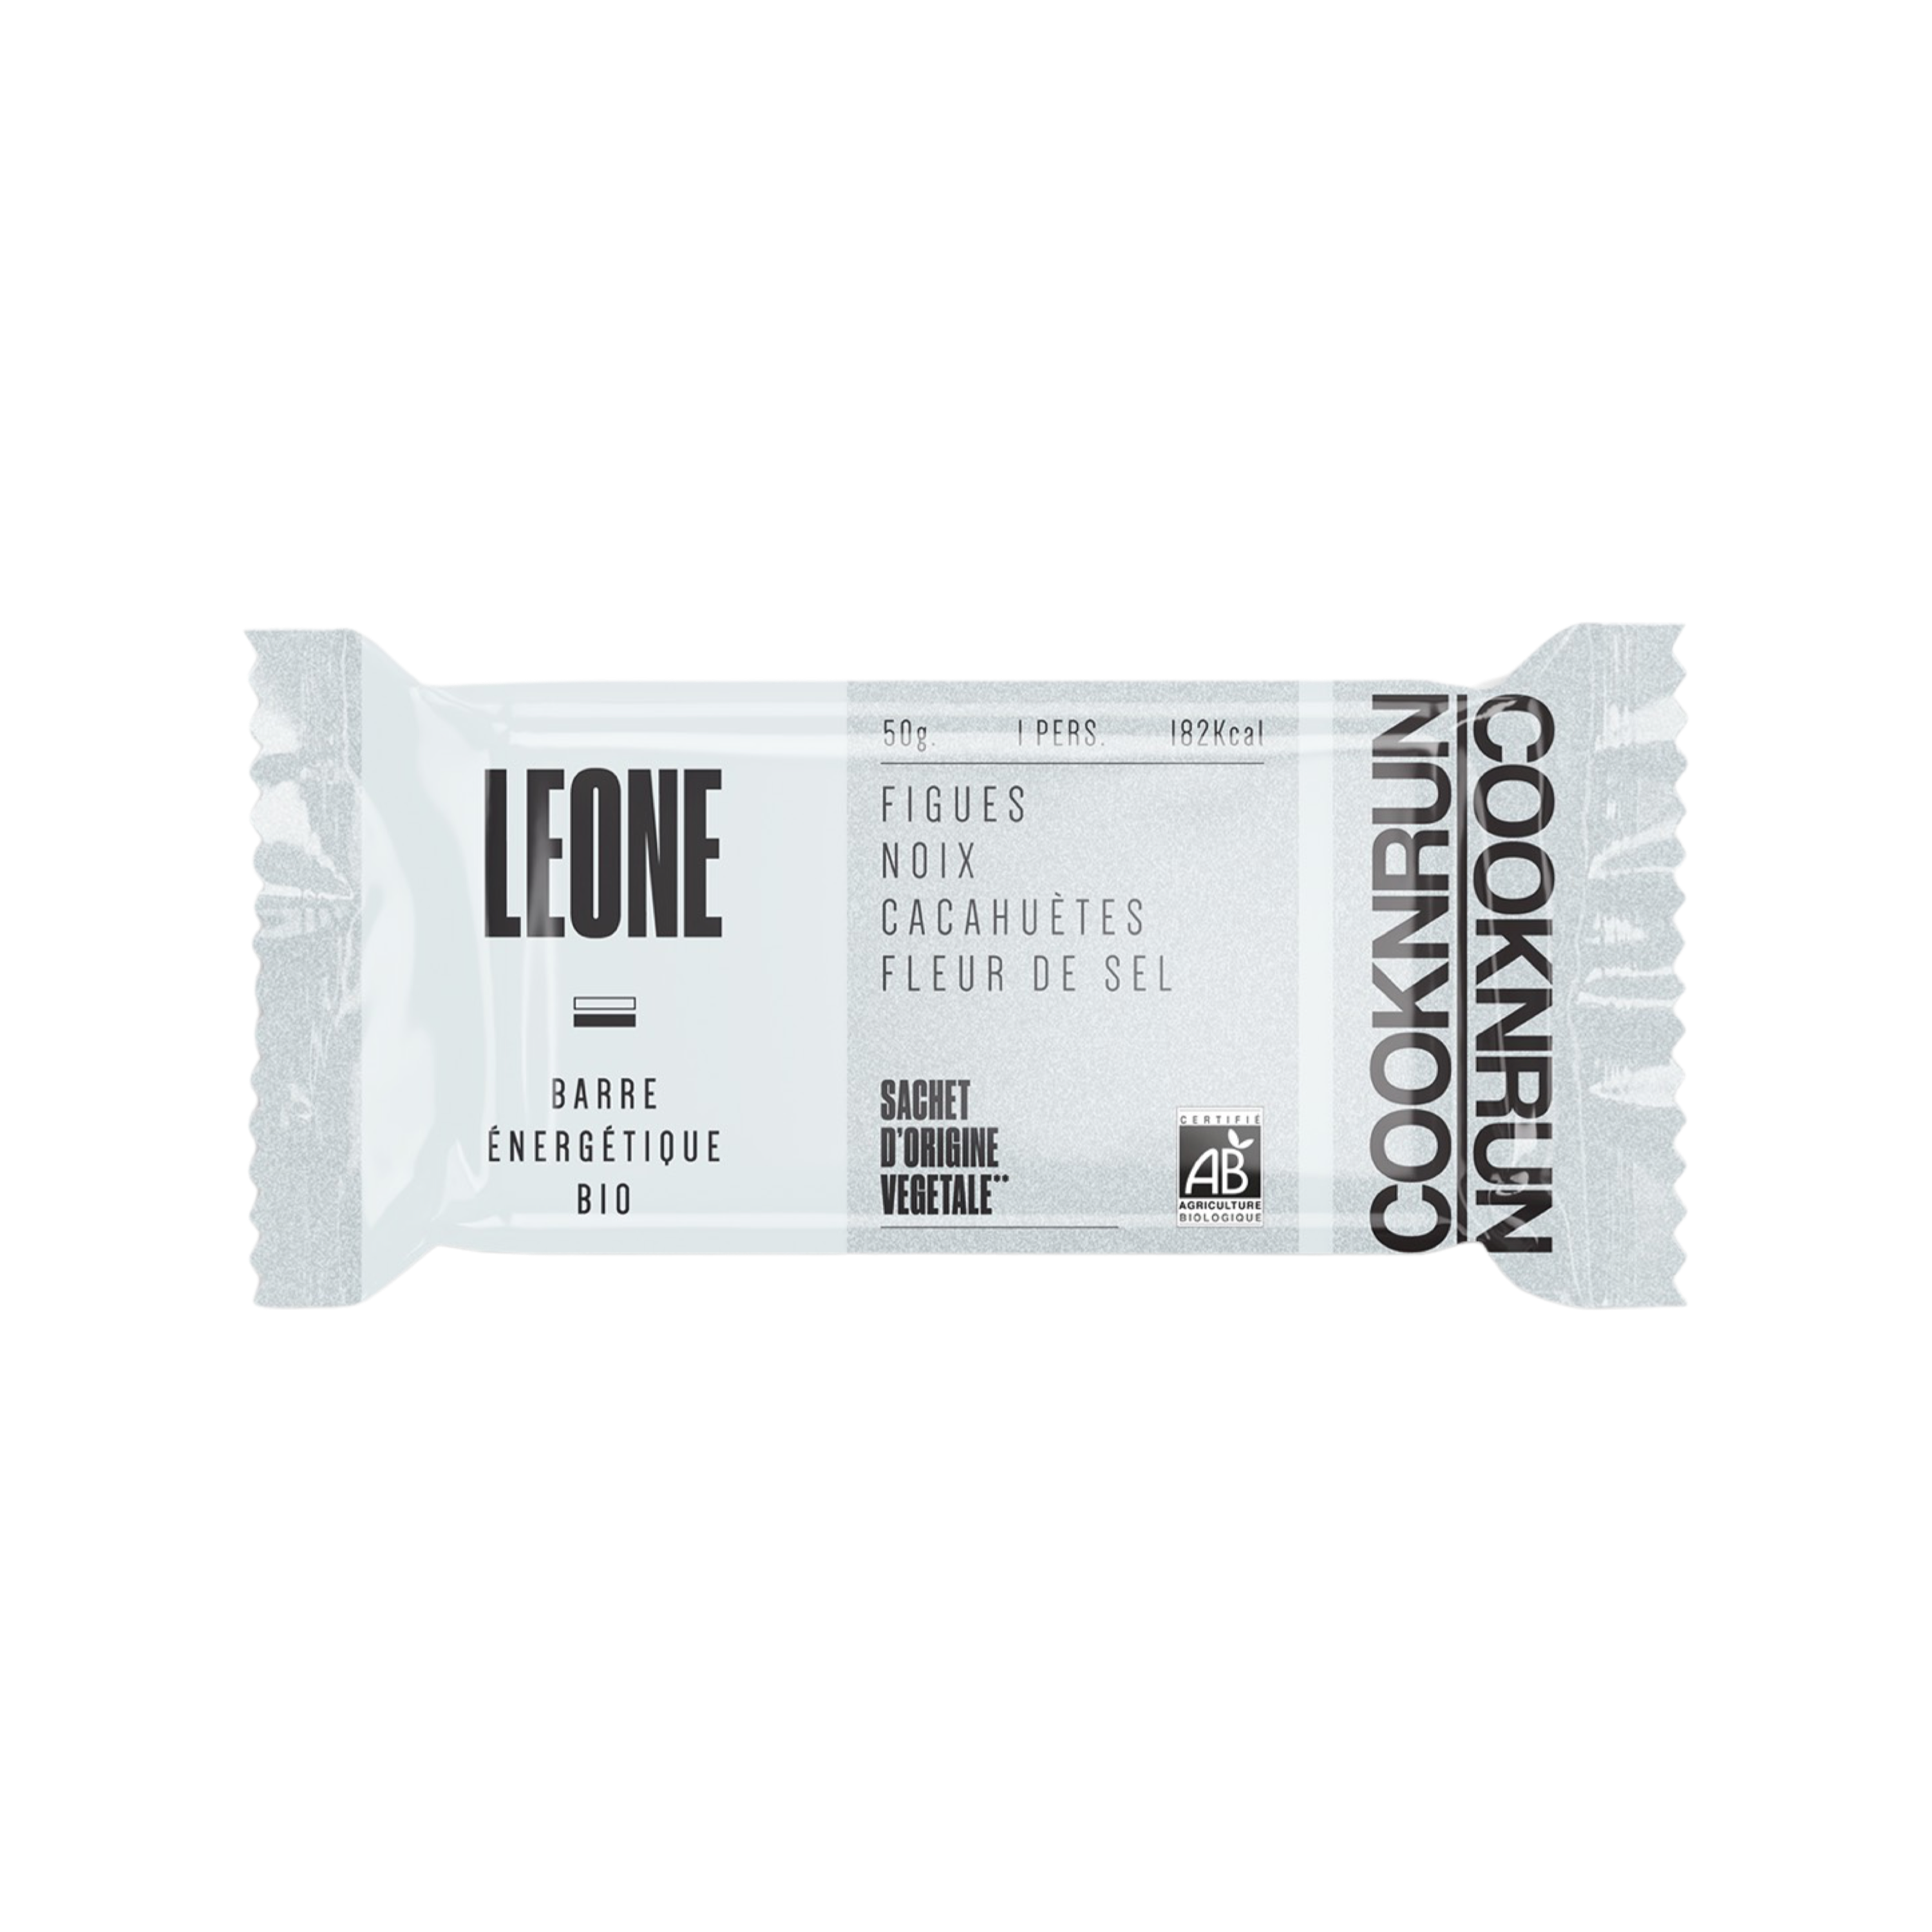 Image de Leone, une barre énergétique bio de chez Cooknrun. Constitué de pate de figue